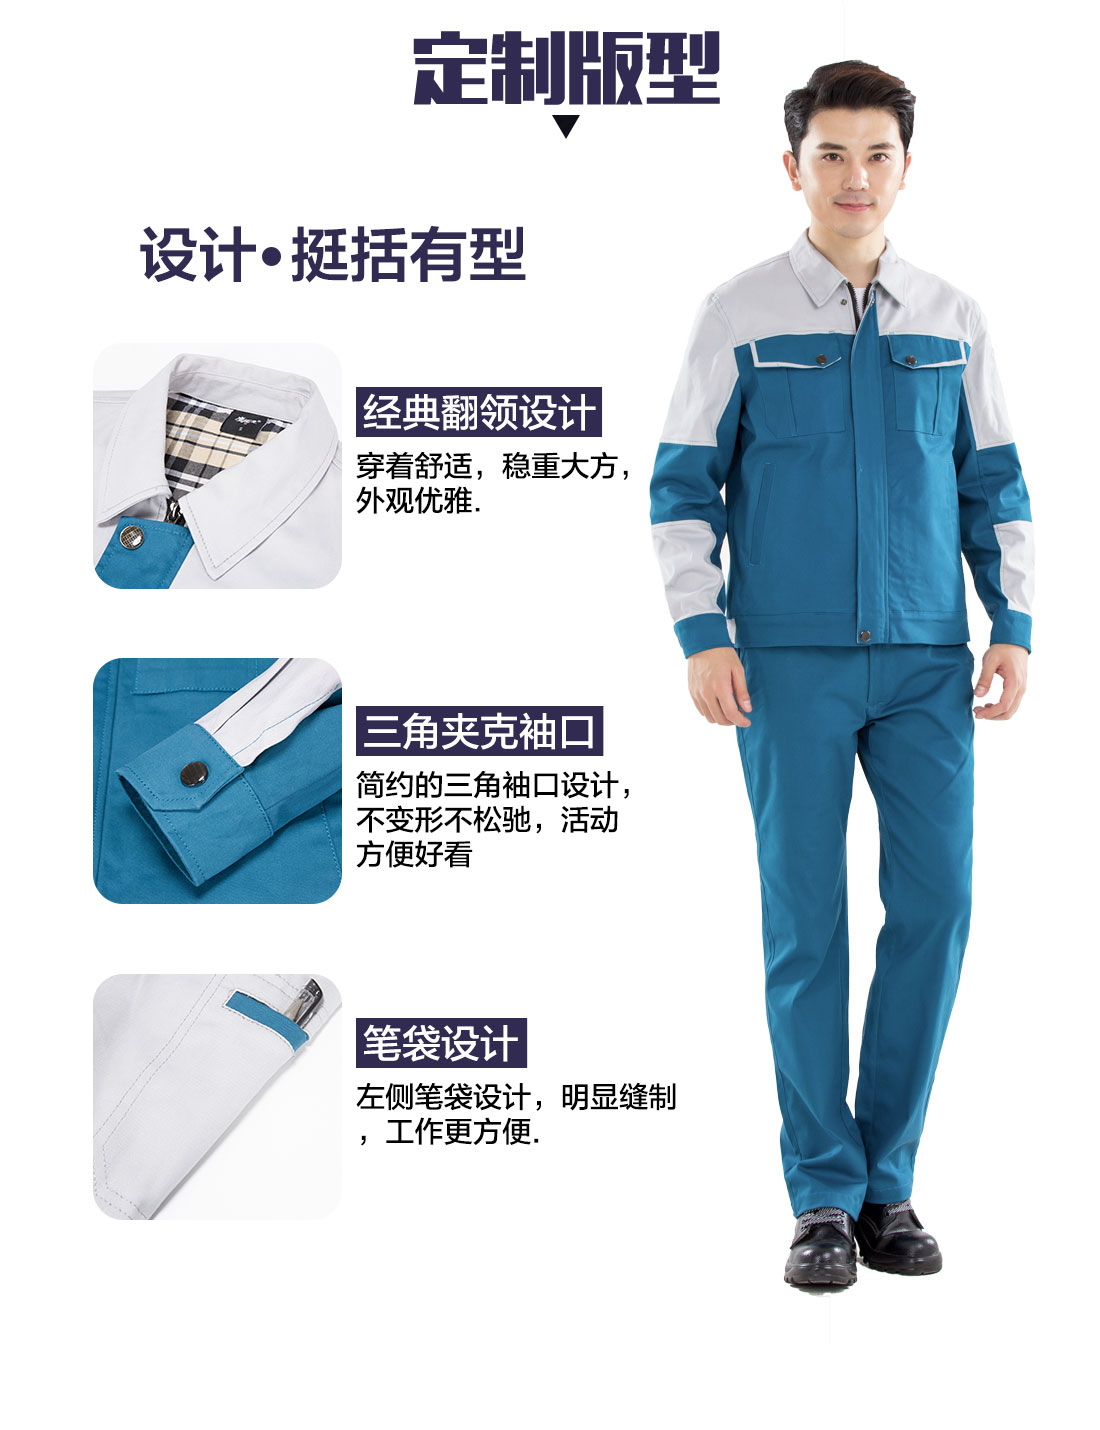 长袖全棉工作服的3D立体版型设计